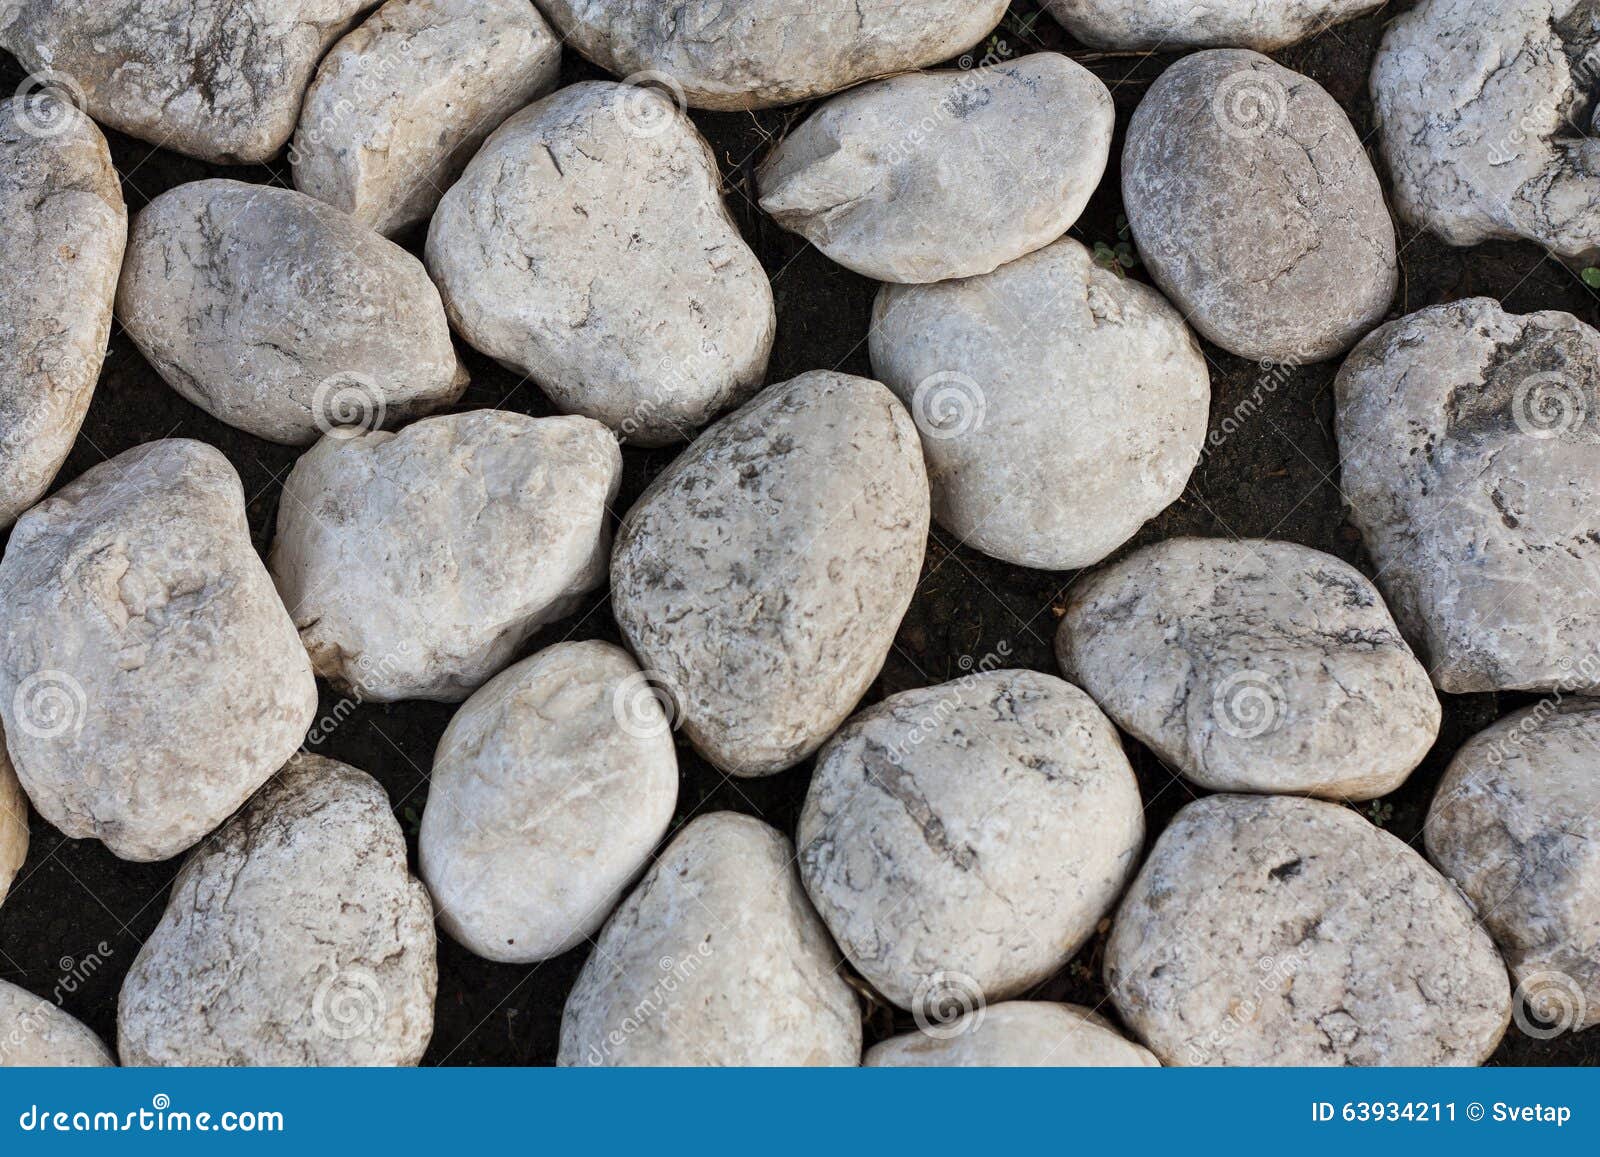 rocky stony texture photo